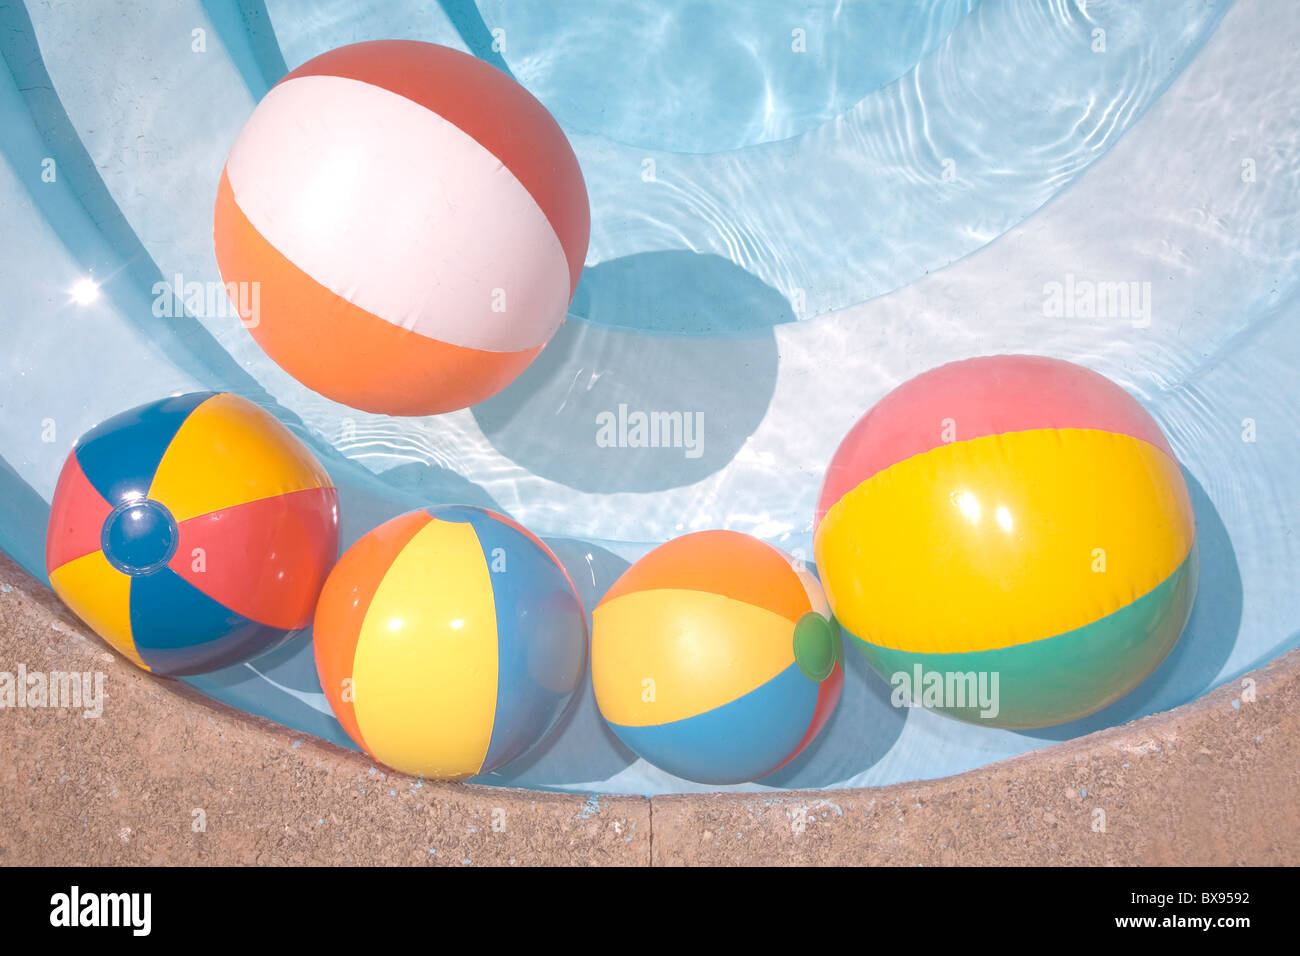 Balones de playa en una piscina de color azul Foto de stock